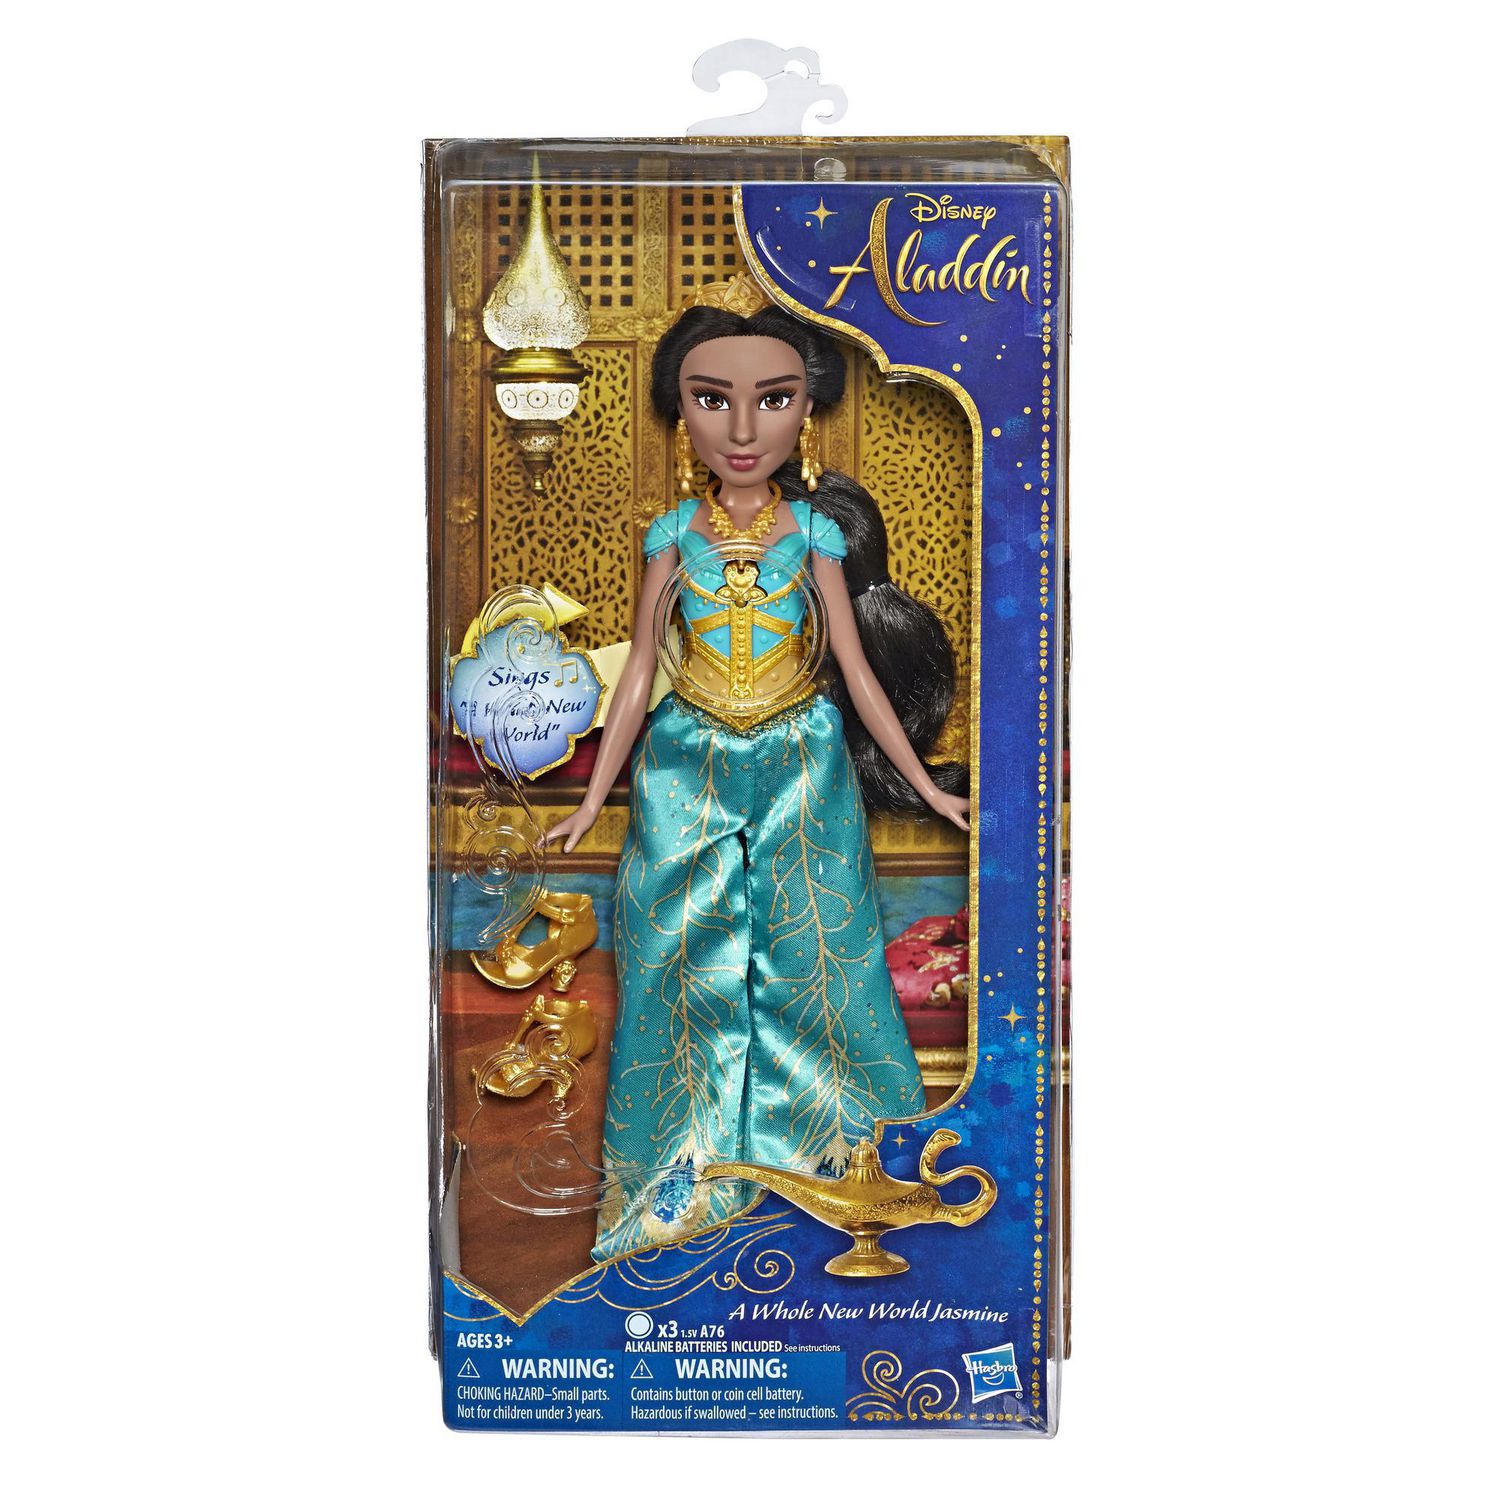 Age 3+ Aladdin Film New Disney Aladdin Princess Jasmine Doll 